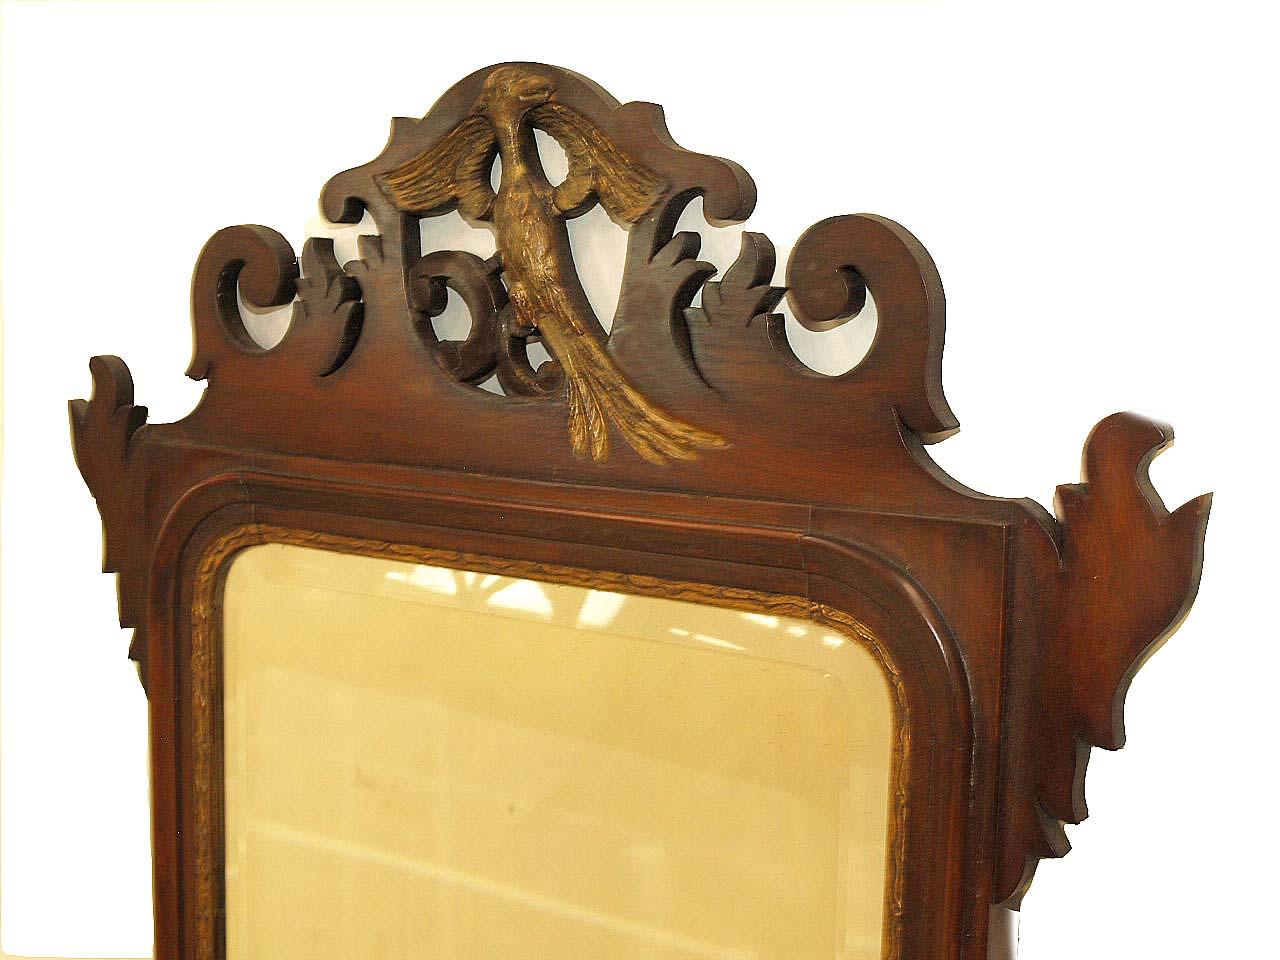 Miroir marqueté de style géorgien dont la crête présente un phénix doré, le miroir biseauté d'origine entouré de moulures dorées, la partie inférieure avec une conque marquetée.